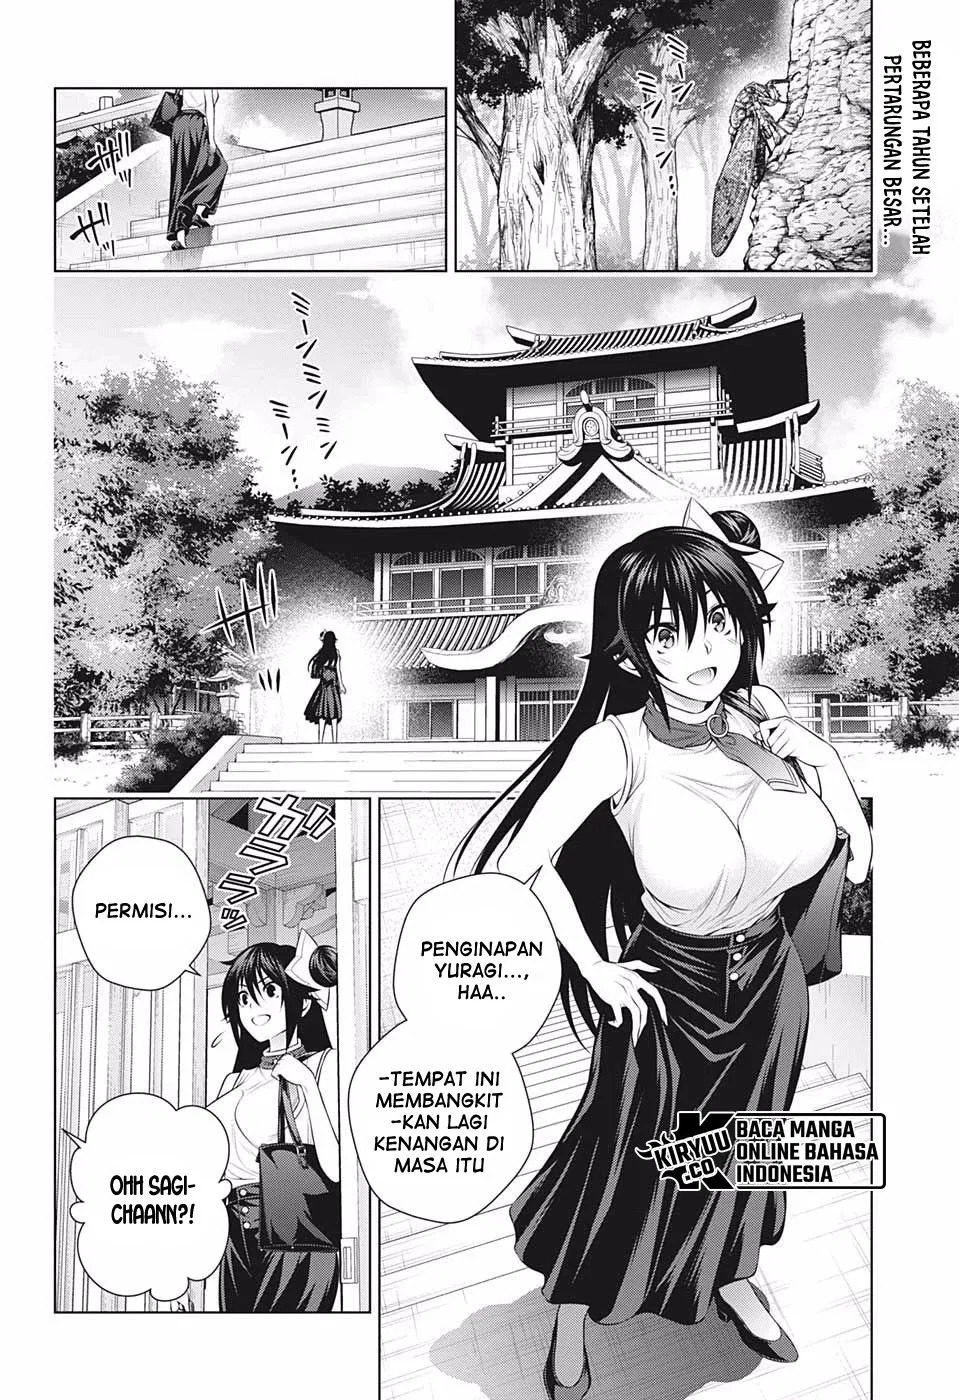 Yuragi-sou no Yuuna-san Chapter 195